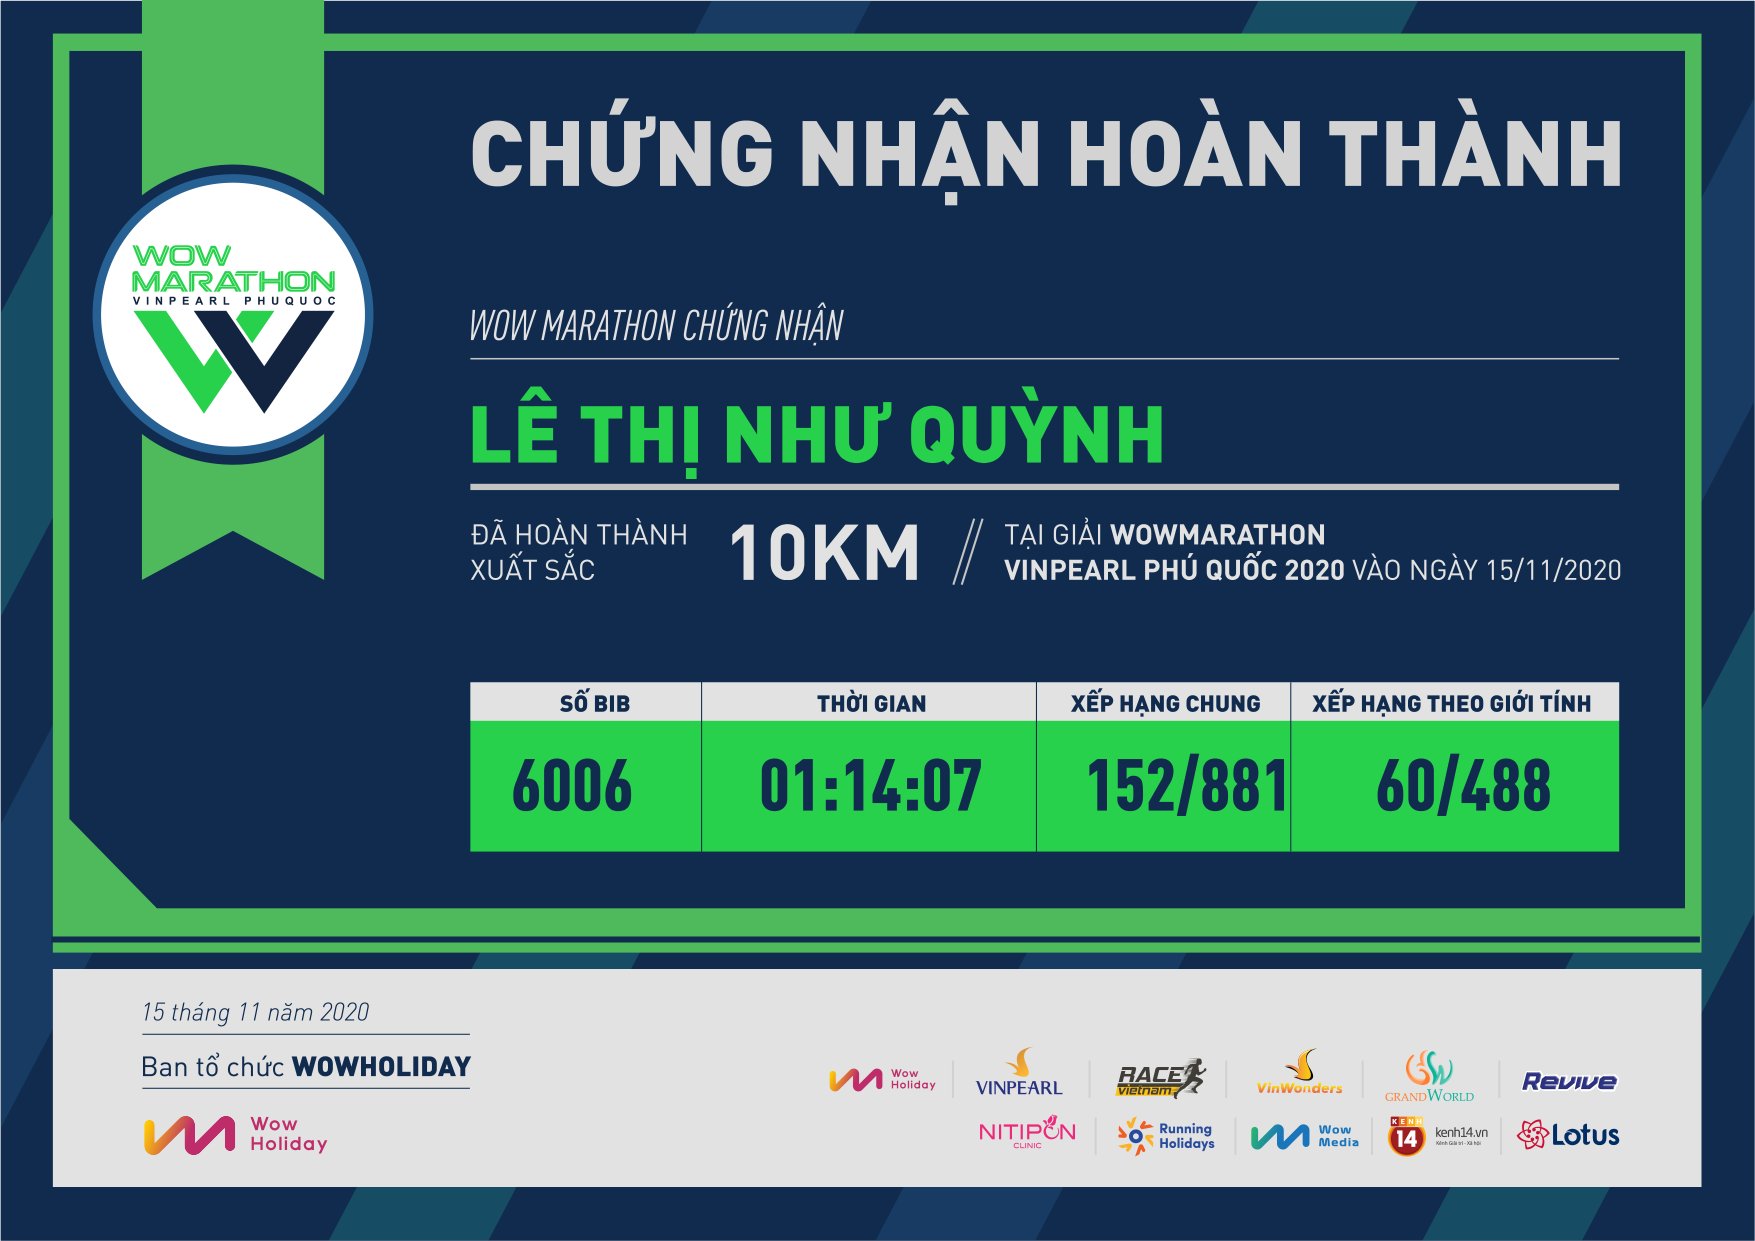 6006 - Lê Thị Như Quỳnh